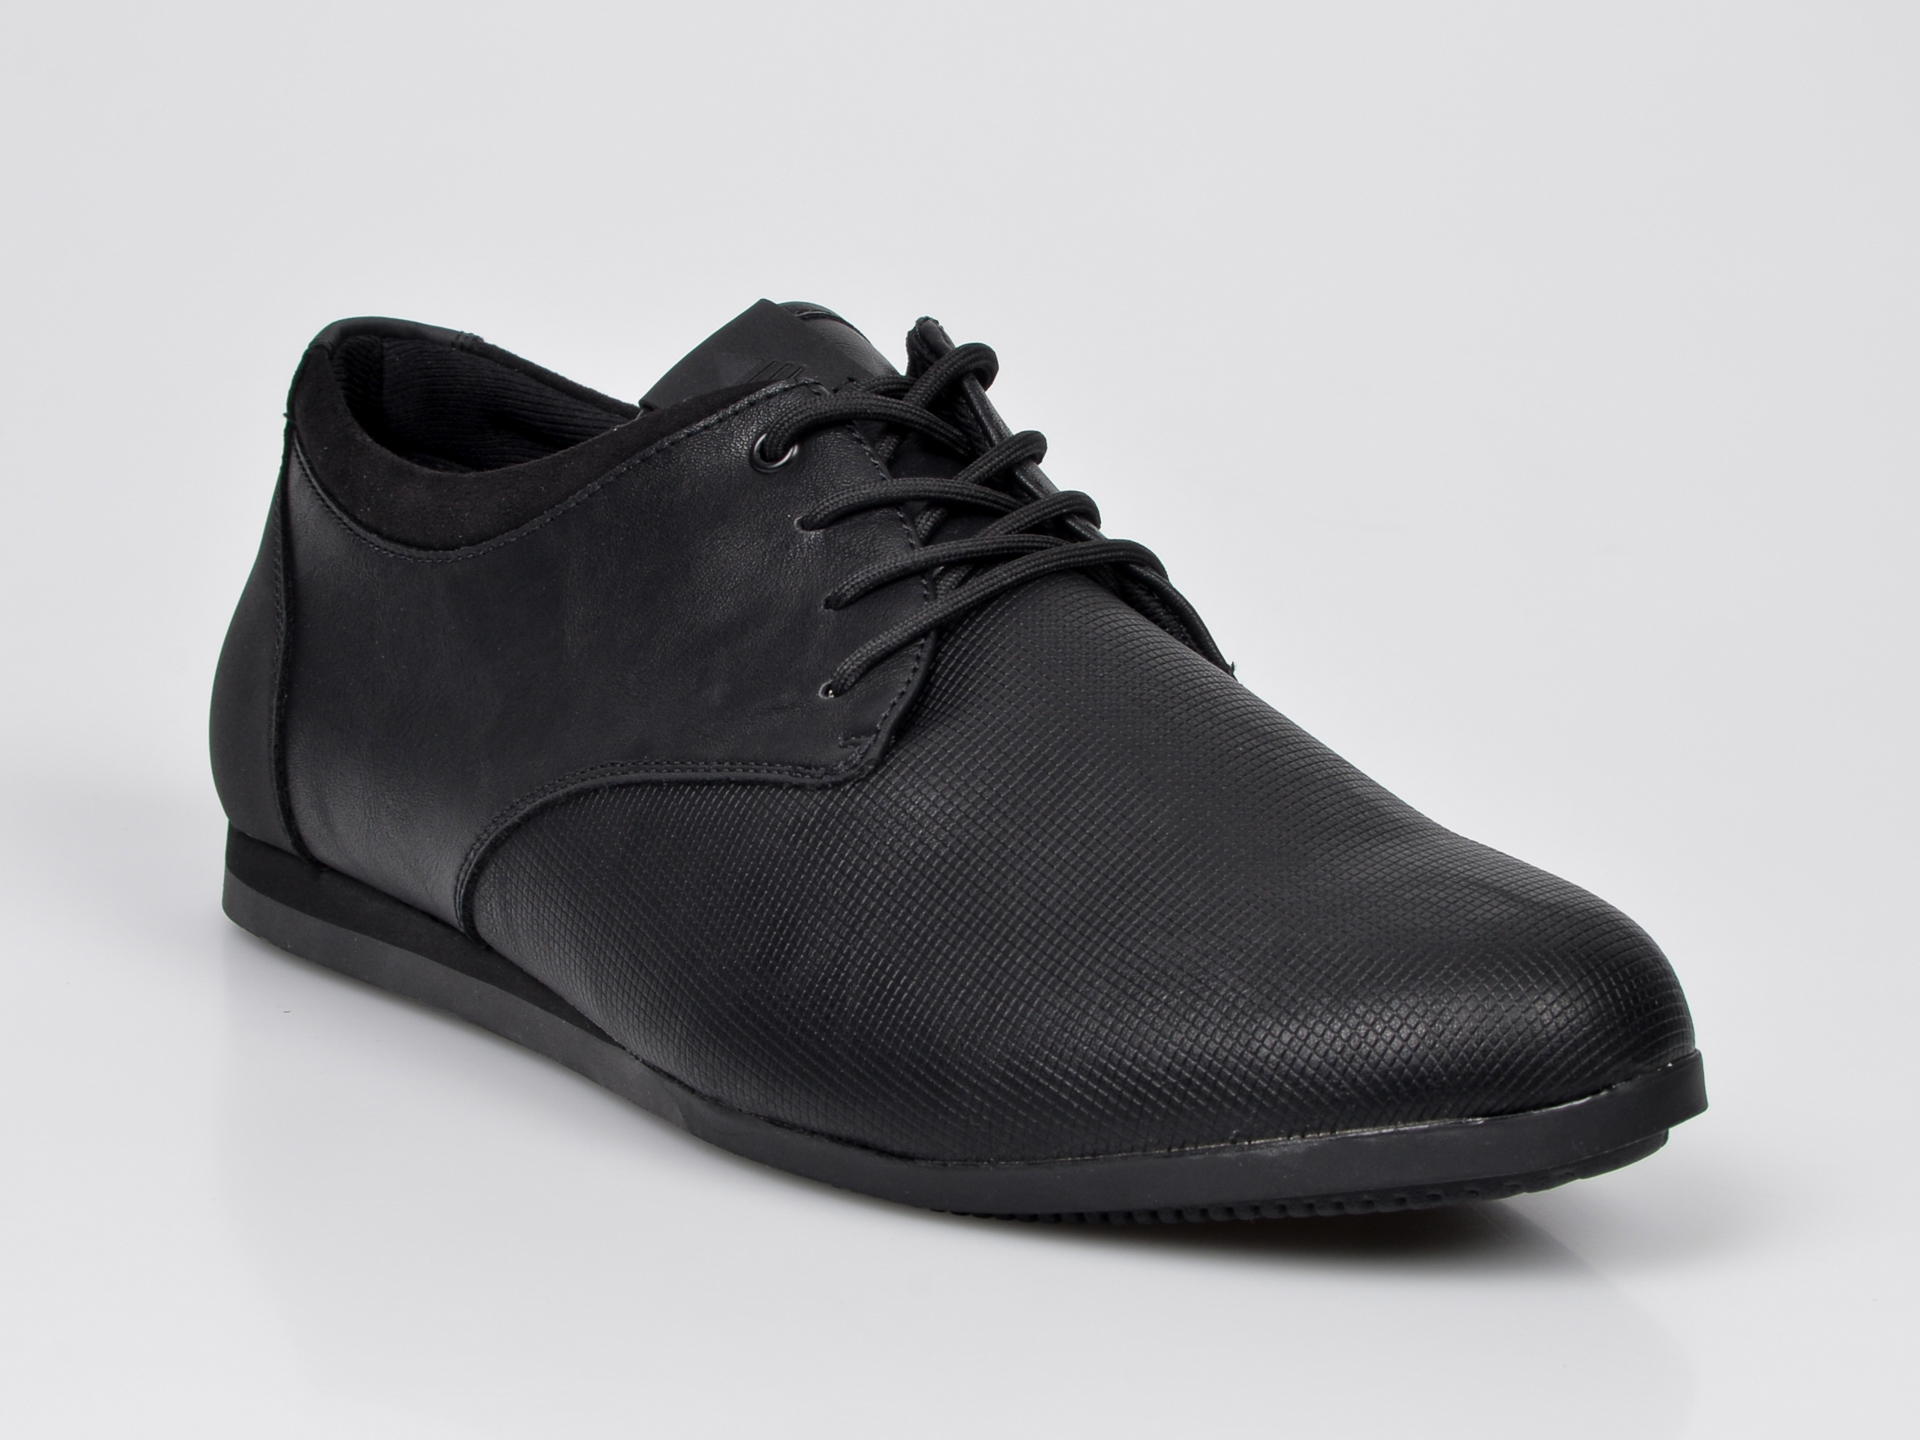 Pantofi ALDO negri, Aauwen-R, din piele ecologica